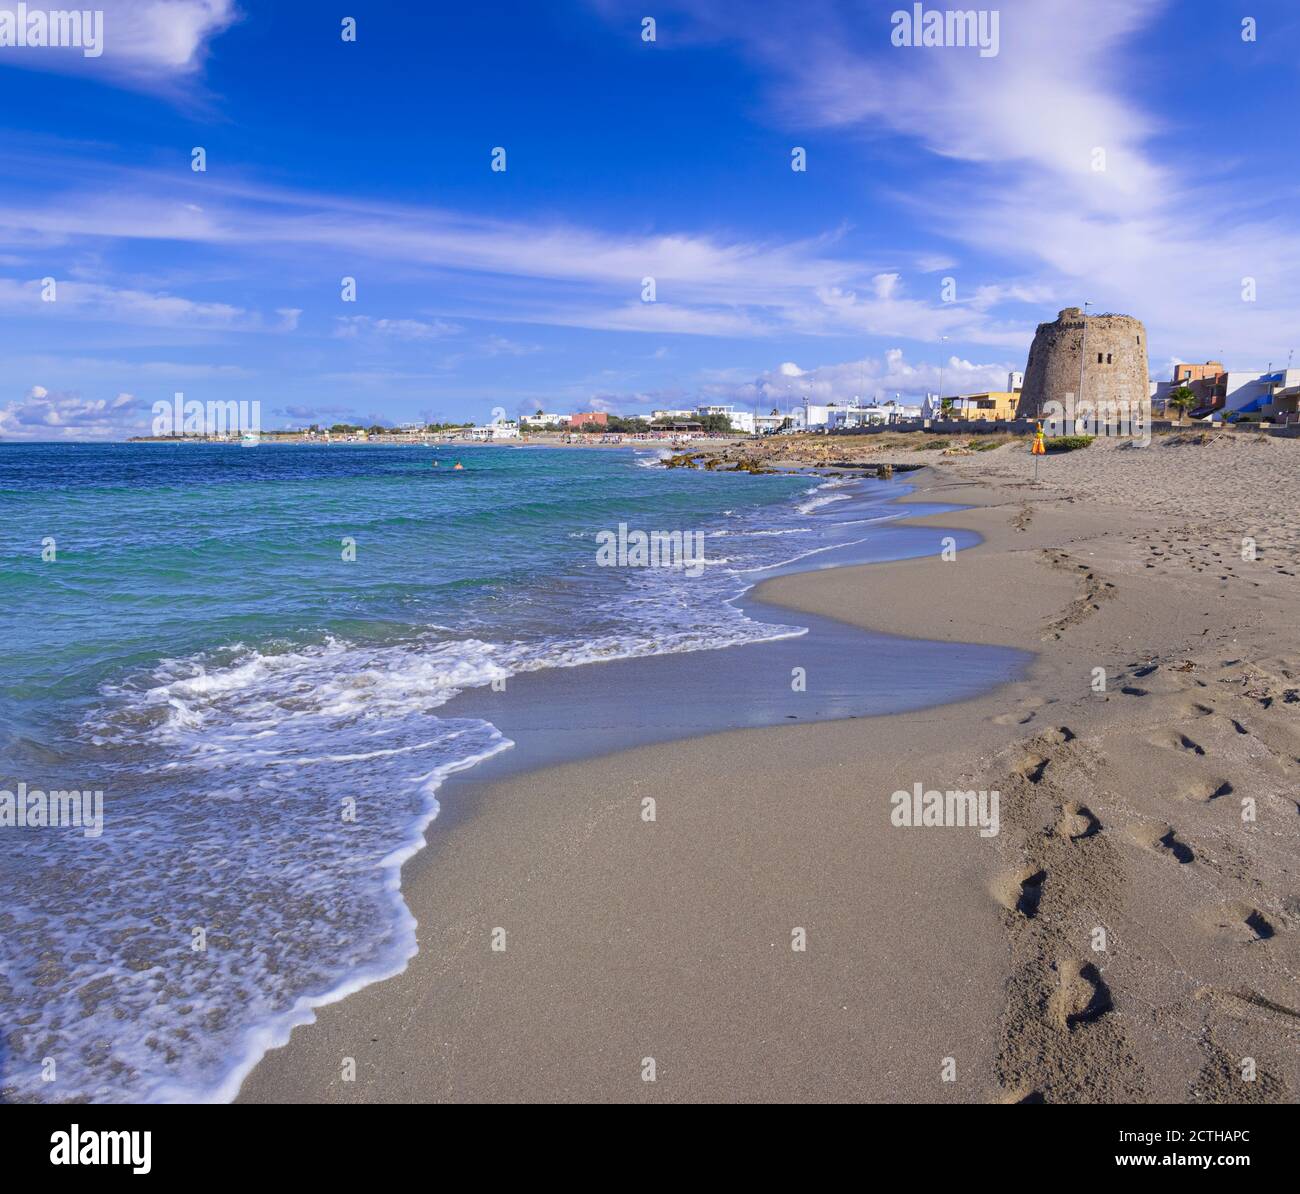 Strand von Torre Mozza in Salento, Apulien (Italien). Der ruinierte Wachturm blickt auf den langen Strand von Torre Mozza mit feinem Sand, der vom klaren Wasser umspült wird. Stockfoto